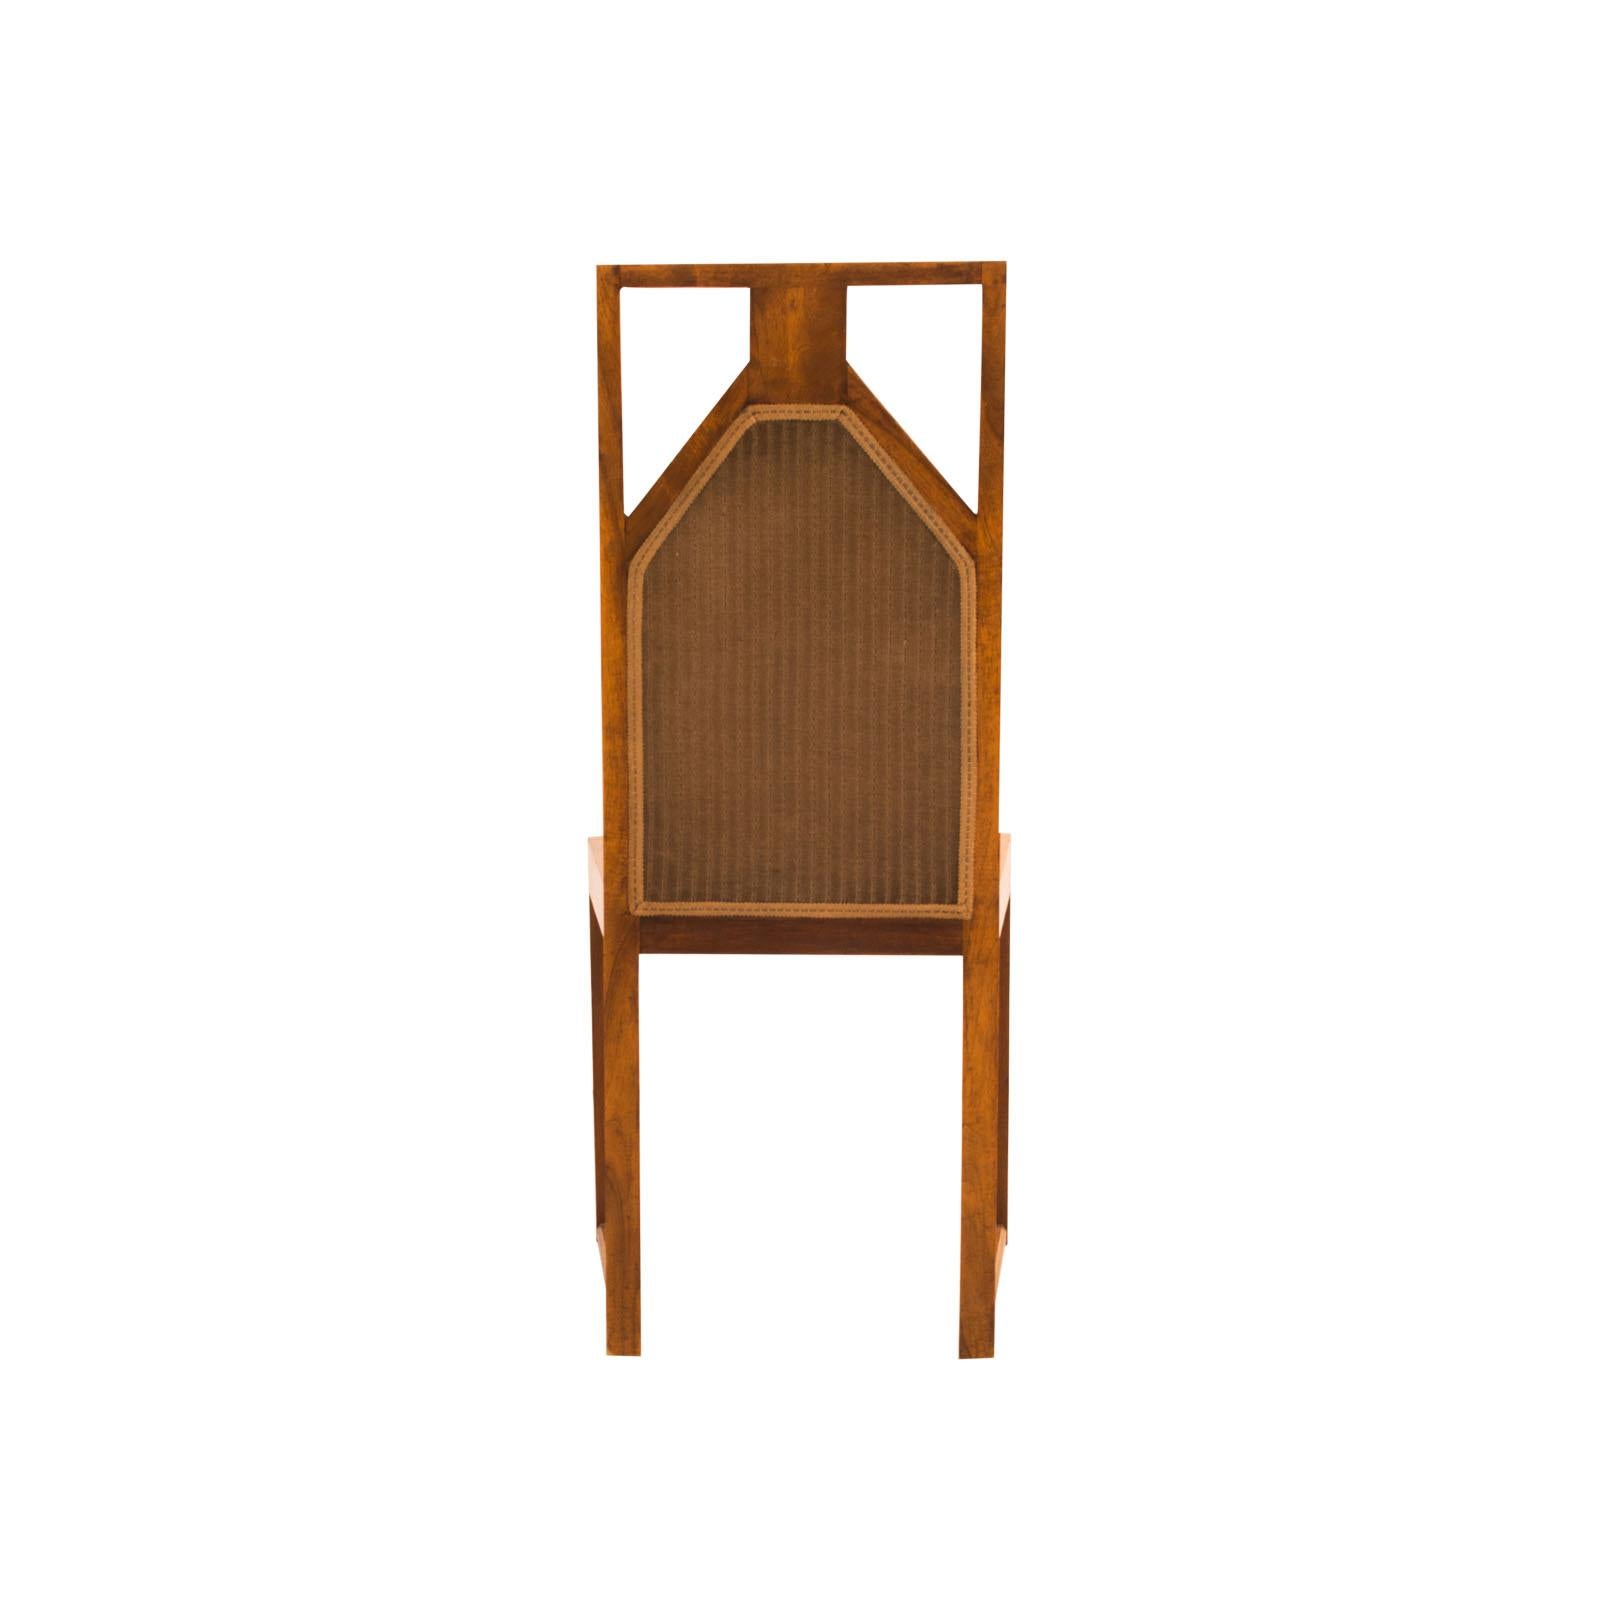 Ein Paar außergewöhnliche Stühle im Stil der frühen Josef Hoffmann Möbel. Die bedeutenden Kufen wurden von Hoffmann in den Anfangsjahren der Wiener Werkstätte ab 1903 verwendet. Dekorative Säulen, hohe Rückenlehne mit geometrischem Muster. Kann auch